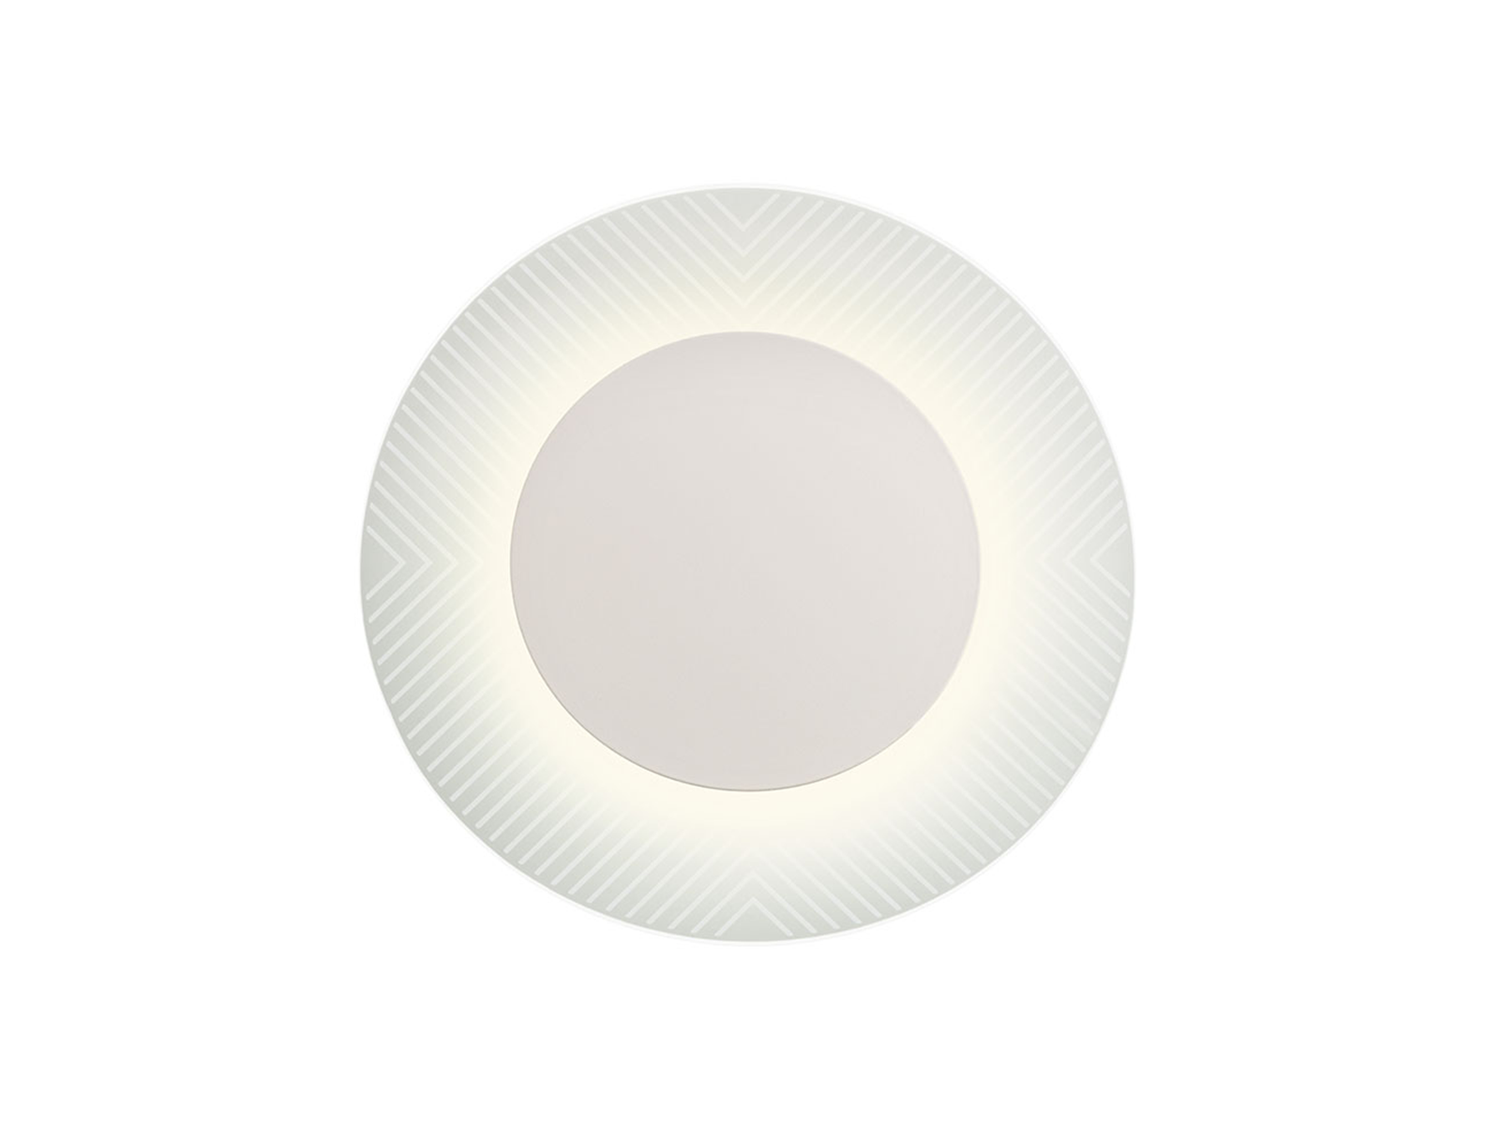 Nástěnné LED svítidlo Tatoo pískově bílé, 7W, 3000K, ø33cm